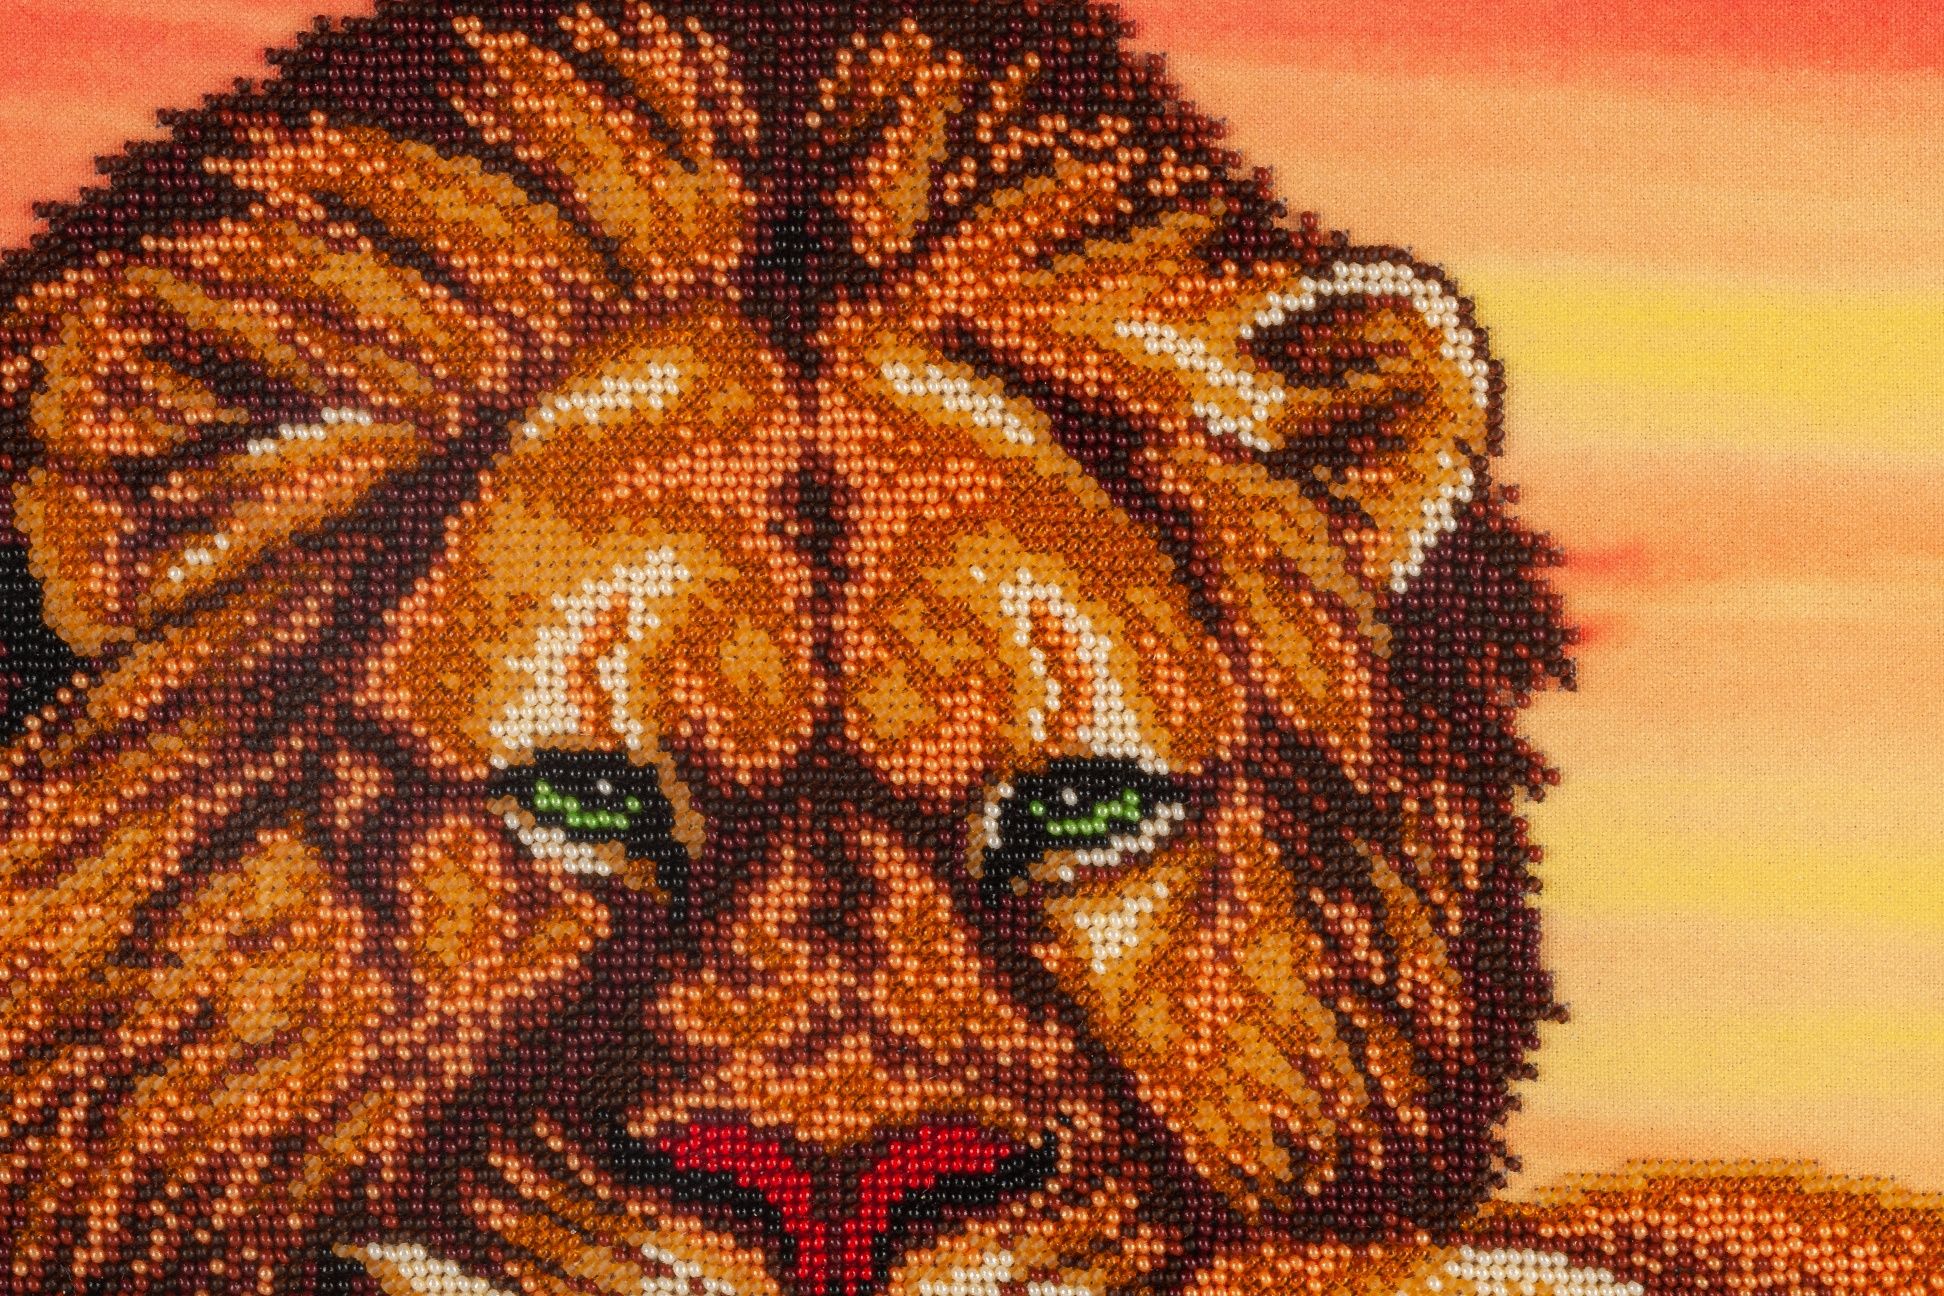 Картина "Львы"  бисером